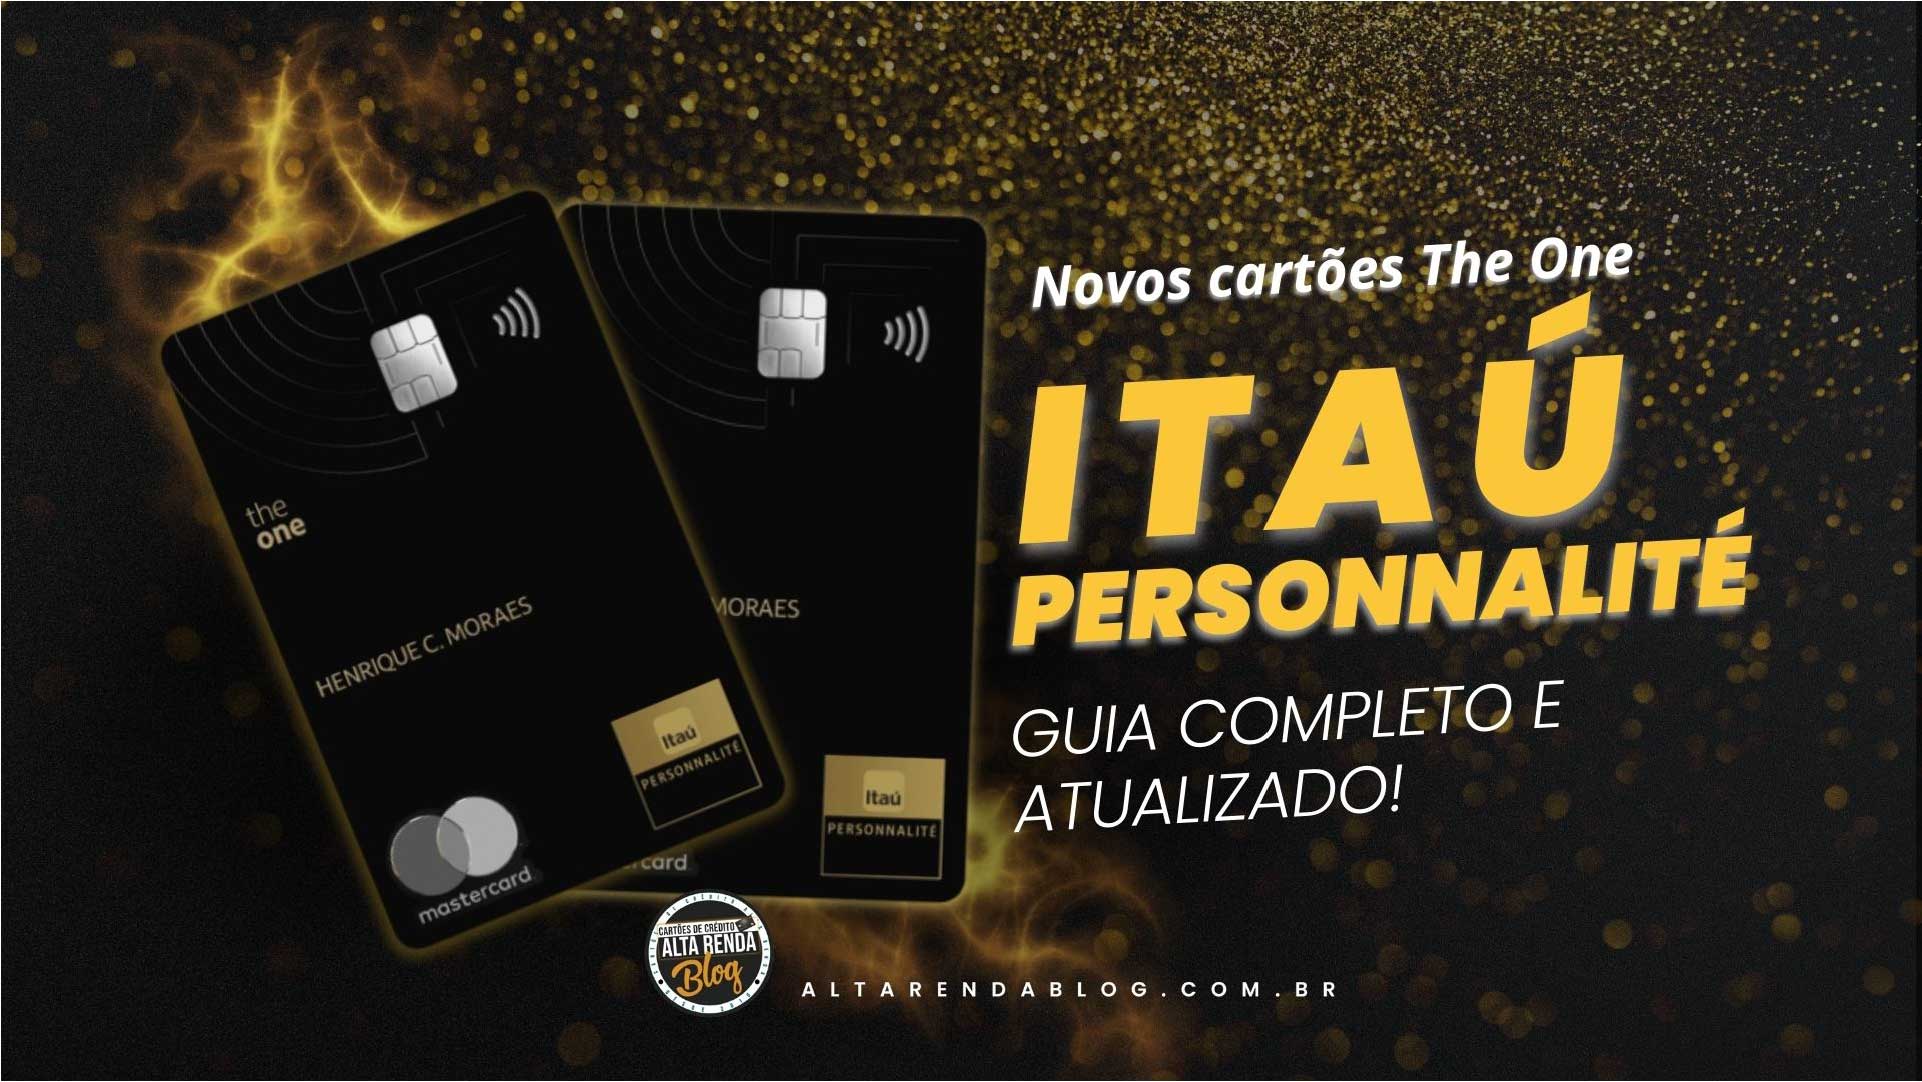 Novo cartão Itaú The One: até 3,5 pontos por dólar e salas VIP